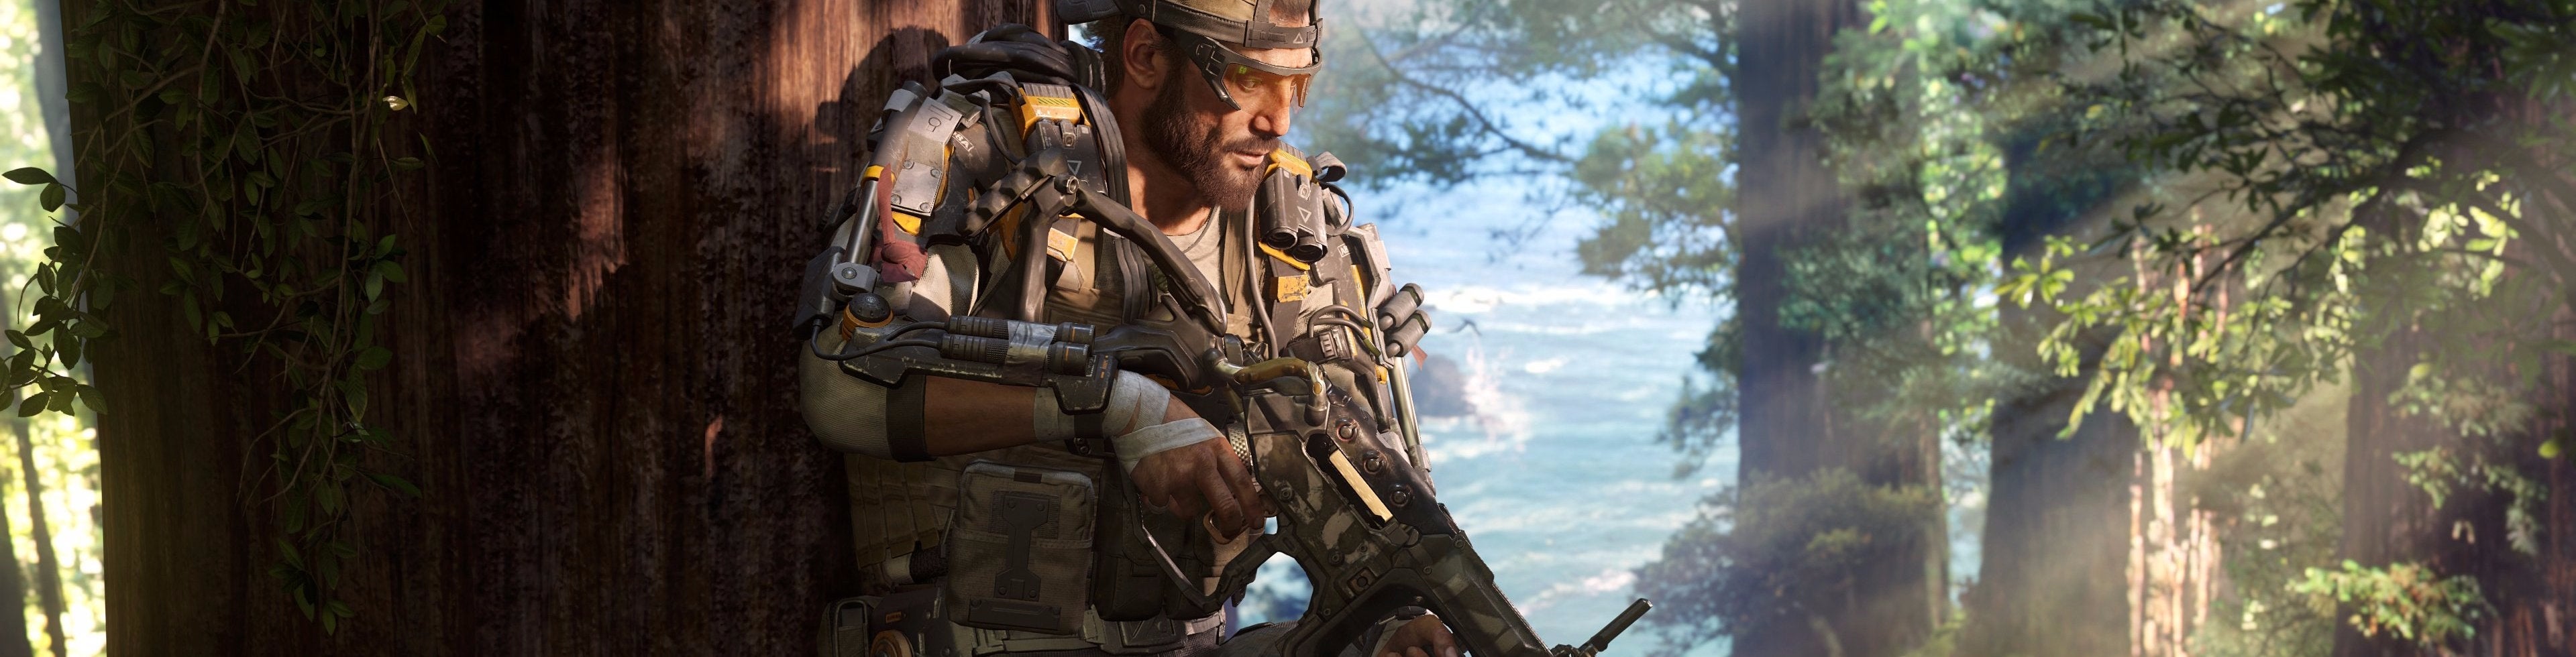 Image for Jak si vede Call of Duty: Black Ops 3 v zahraničních recenzích?